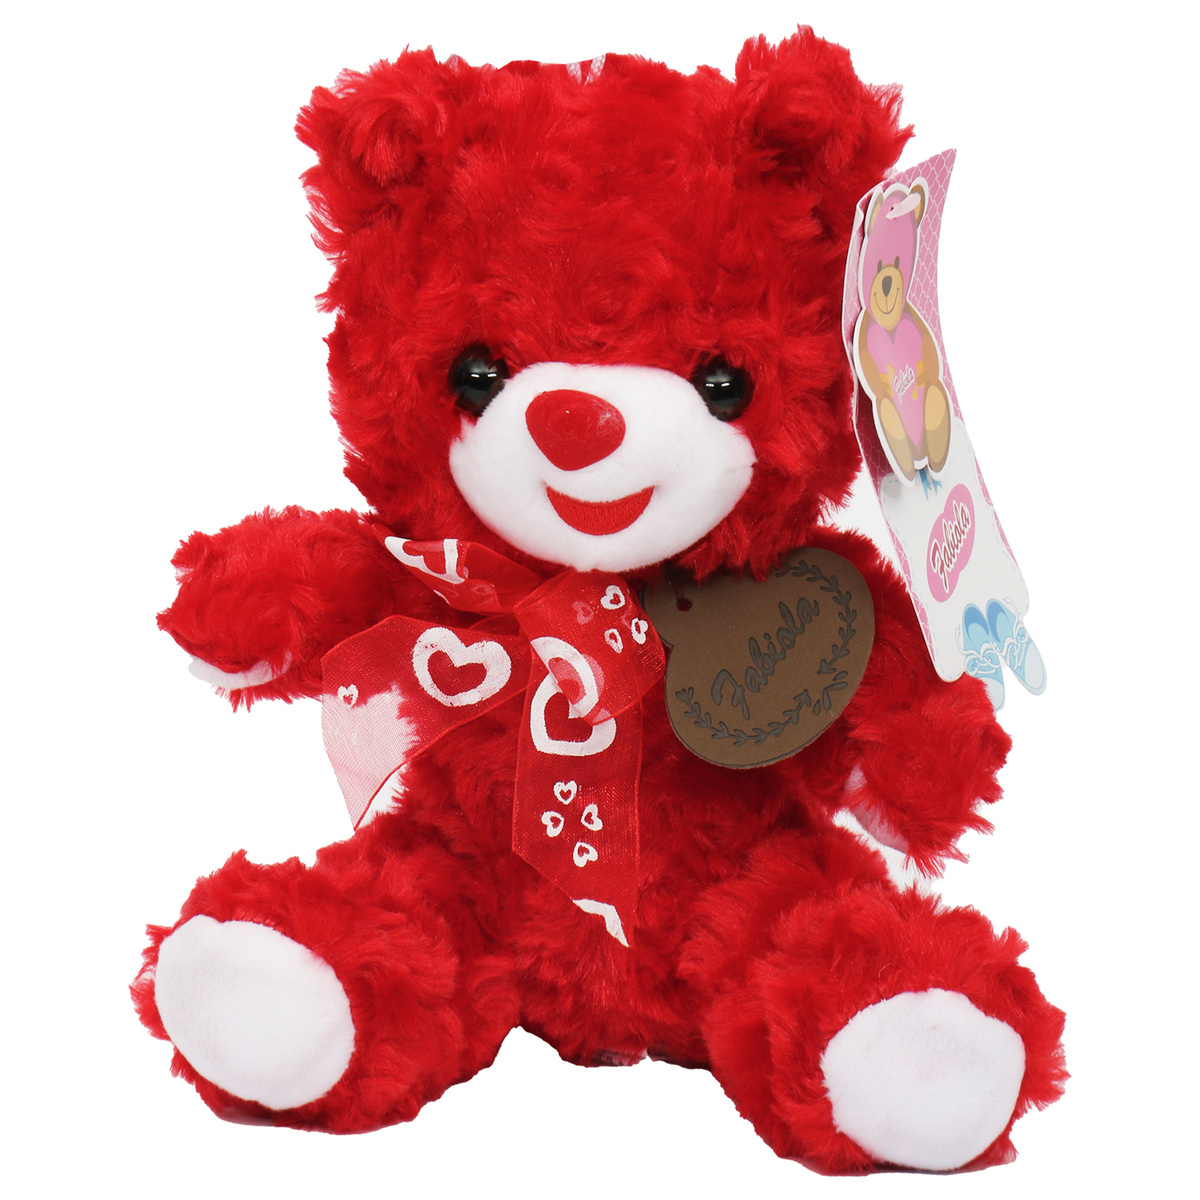 Fabiola Teddy Bear Plush With Heart 20cm YCF22056 Assorted